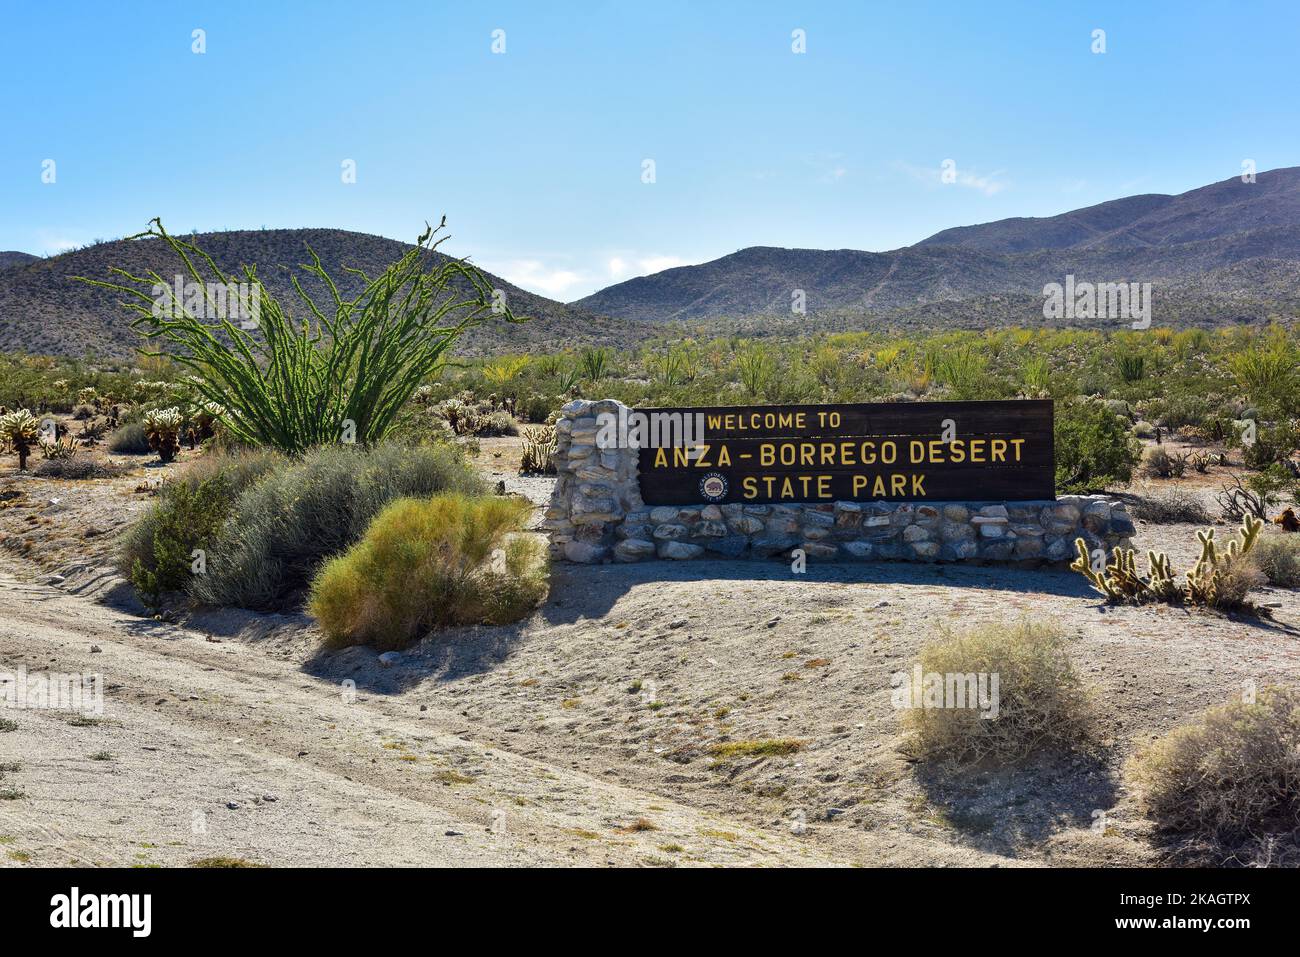 Bienvenue au panneau du parc national du désert d'Anza-Borrego. Banque D'Images